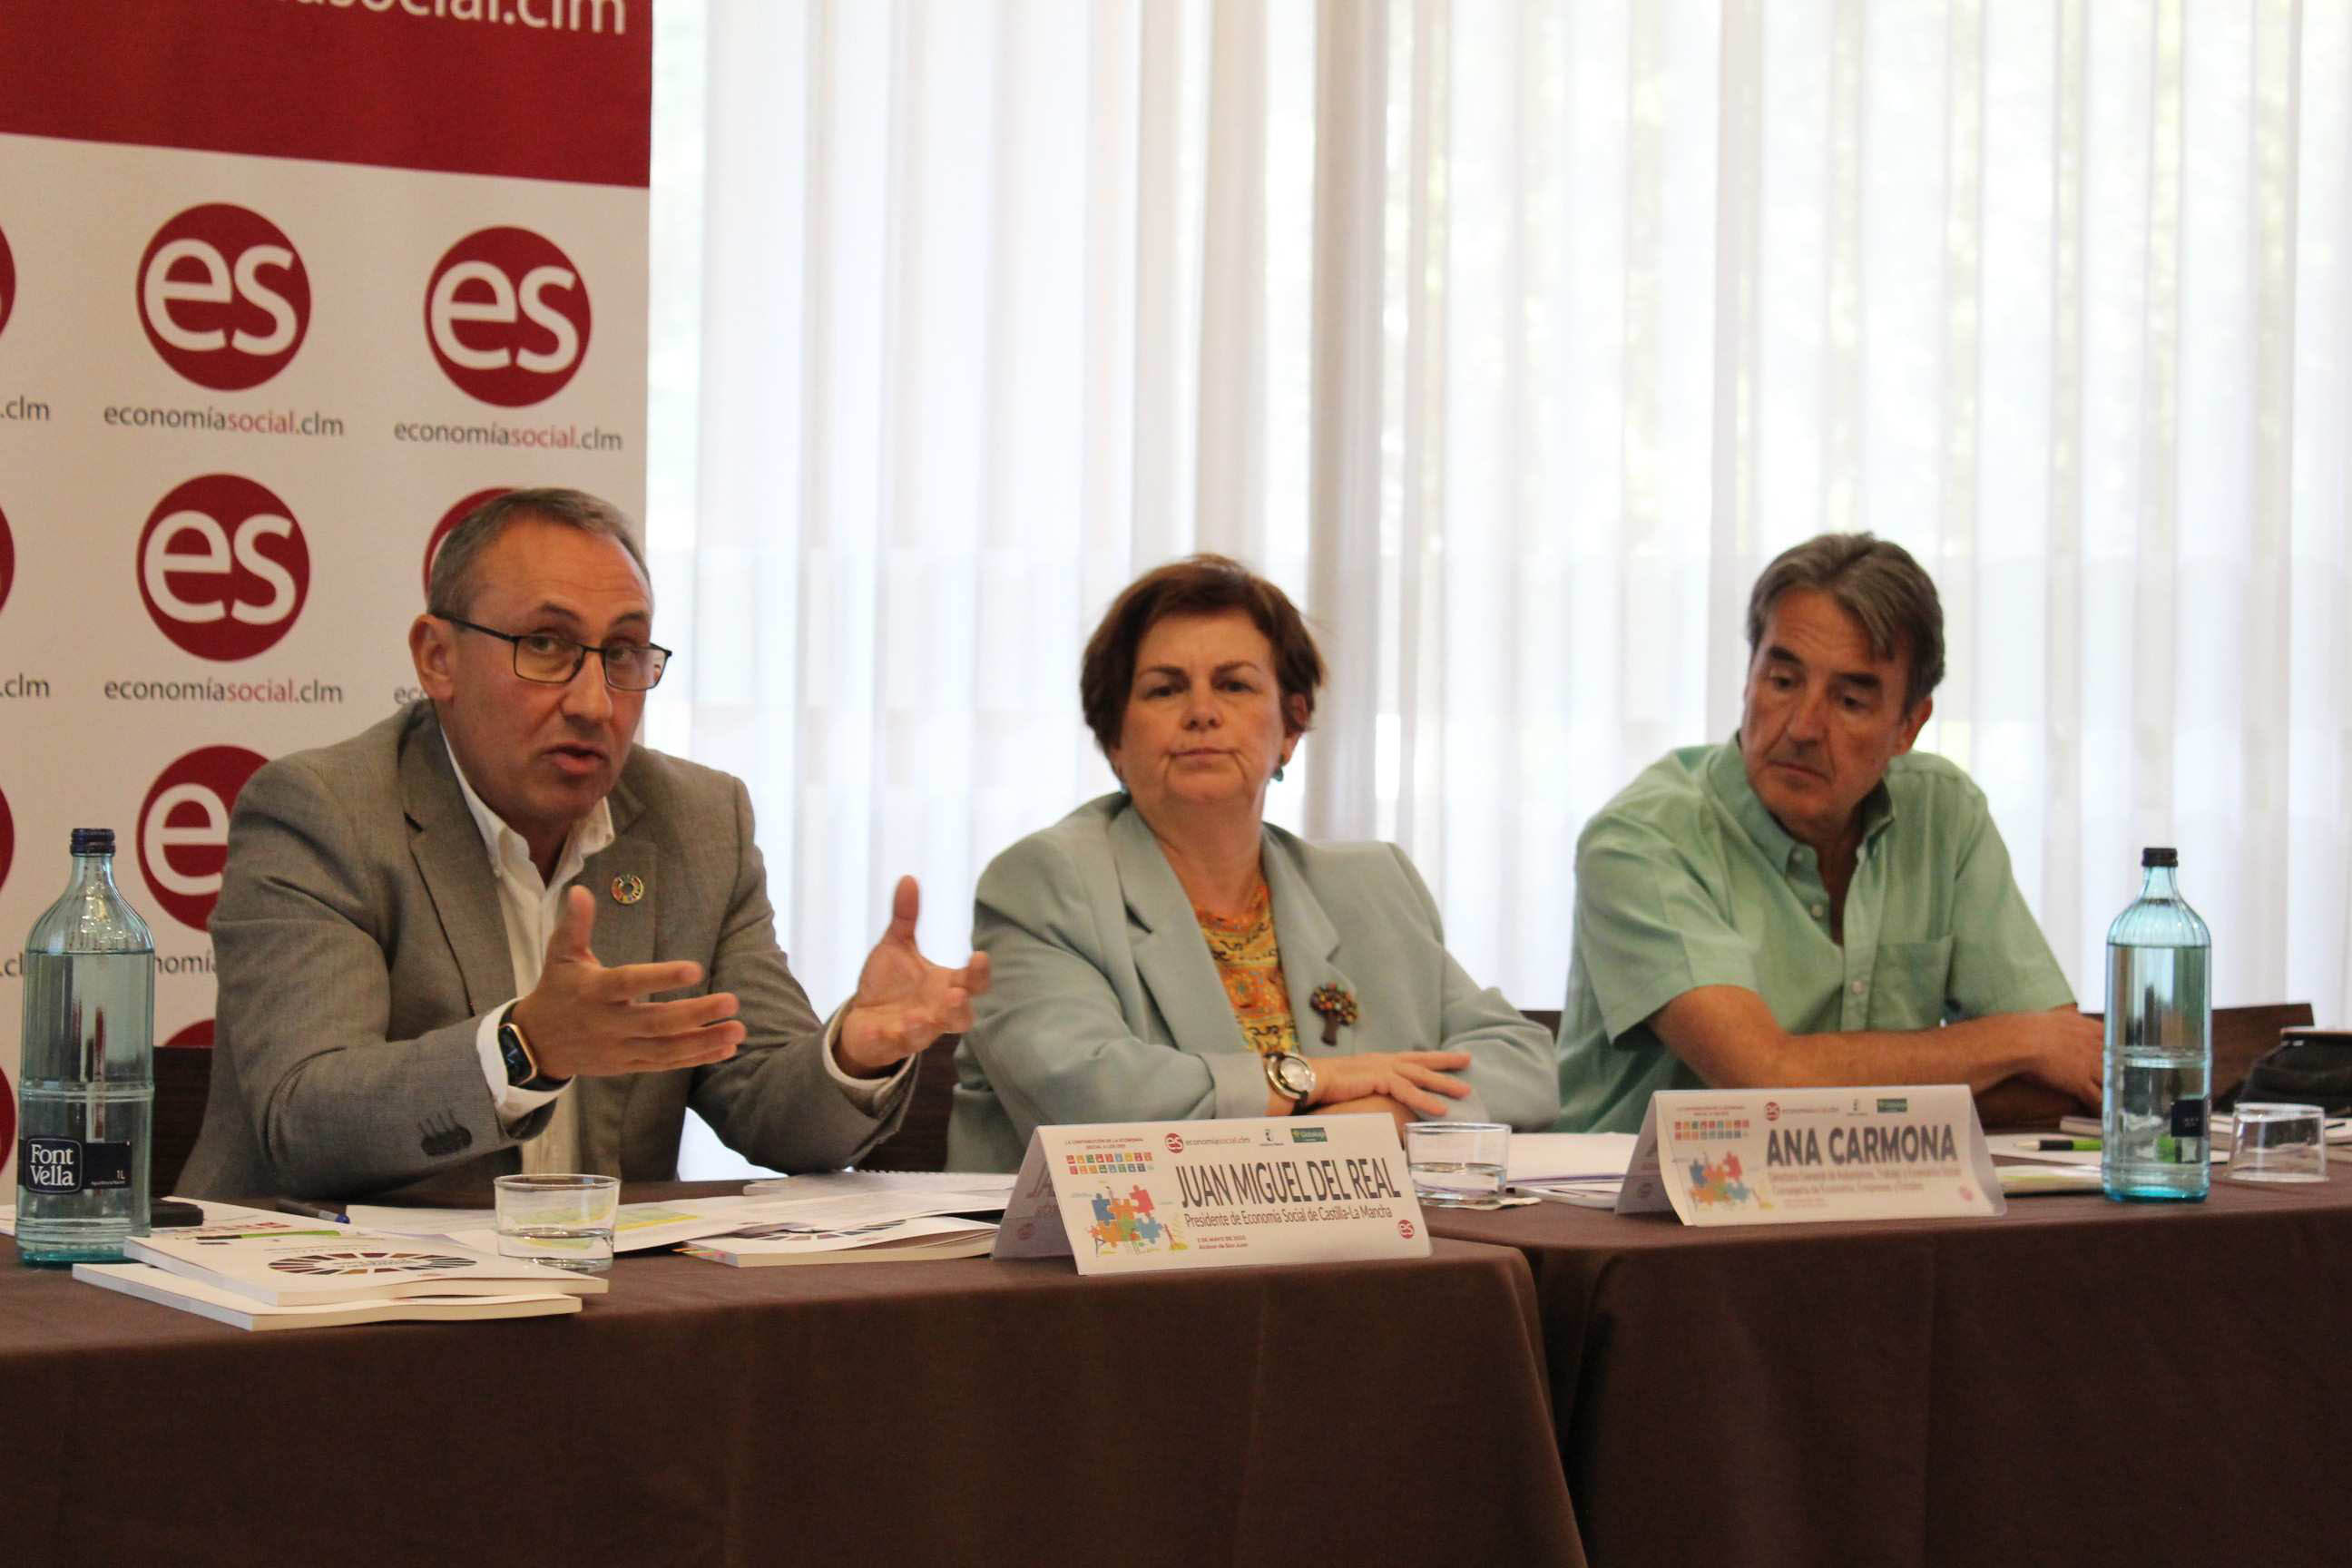 La Confederación de Asociaciones de Economía Social de Castilla-La Mancha analiza su aportación a los ODS en la región